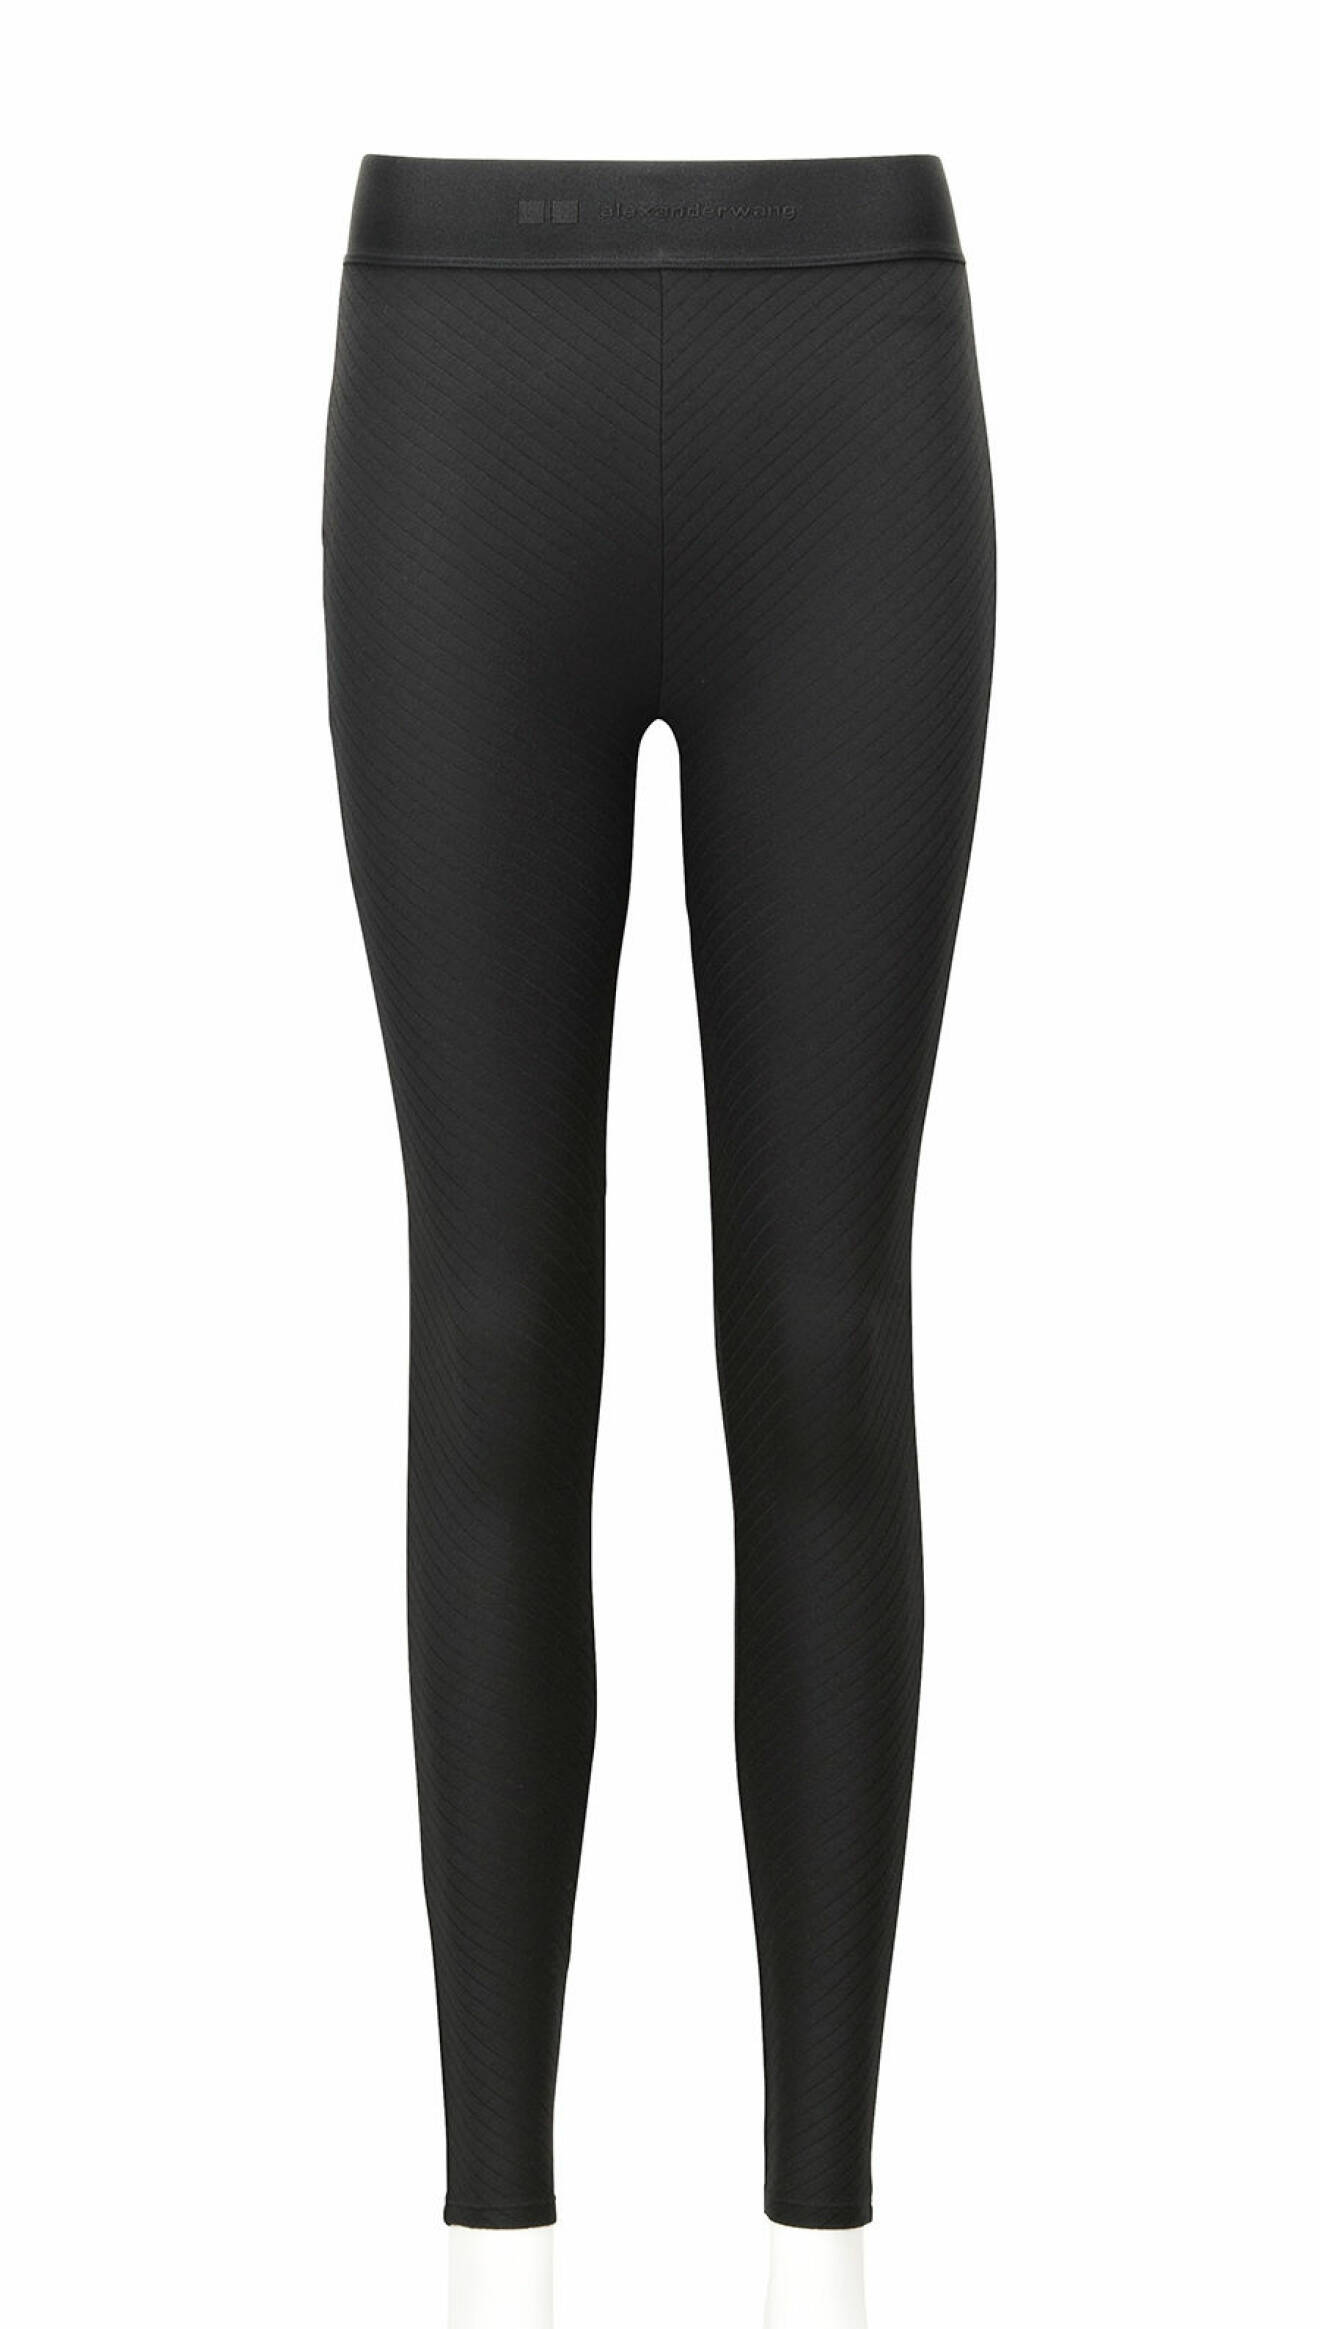 Ribbade leggings, modell varmare, 349 kr, finns i svart, vitt och grått.